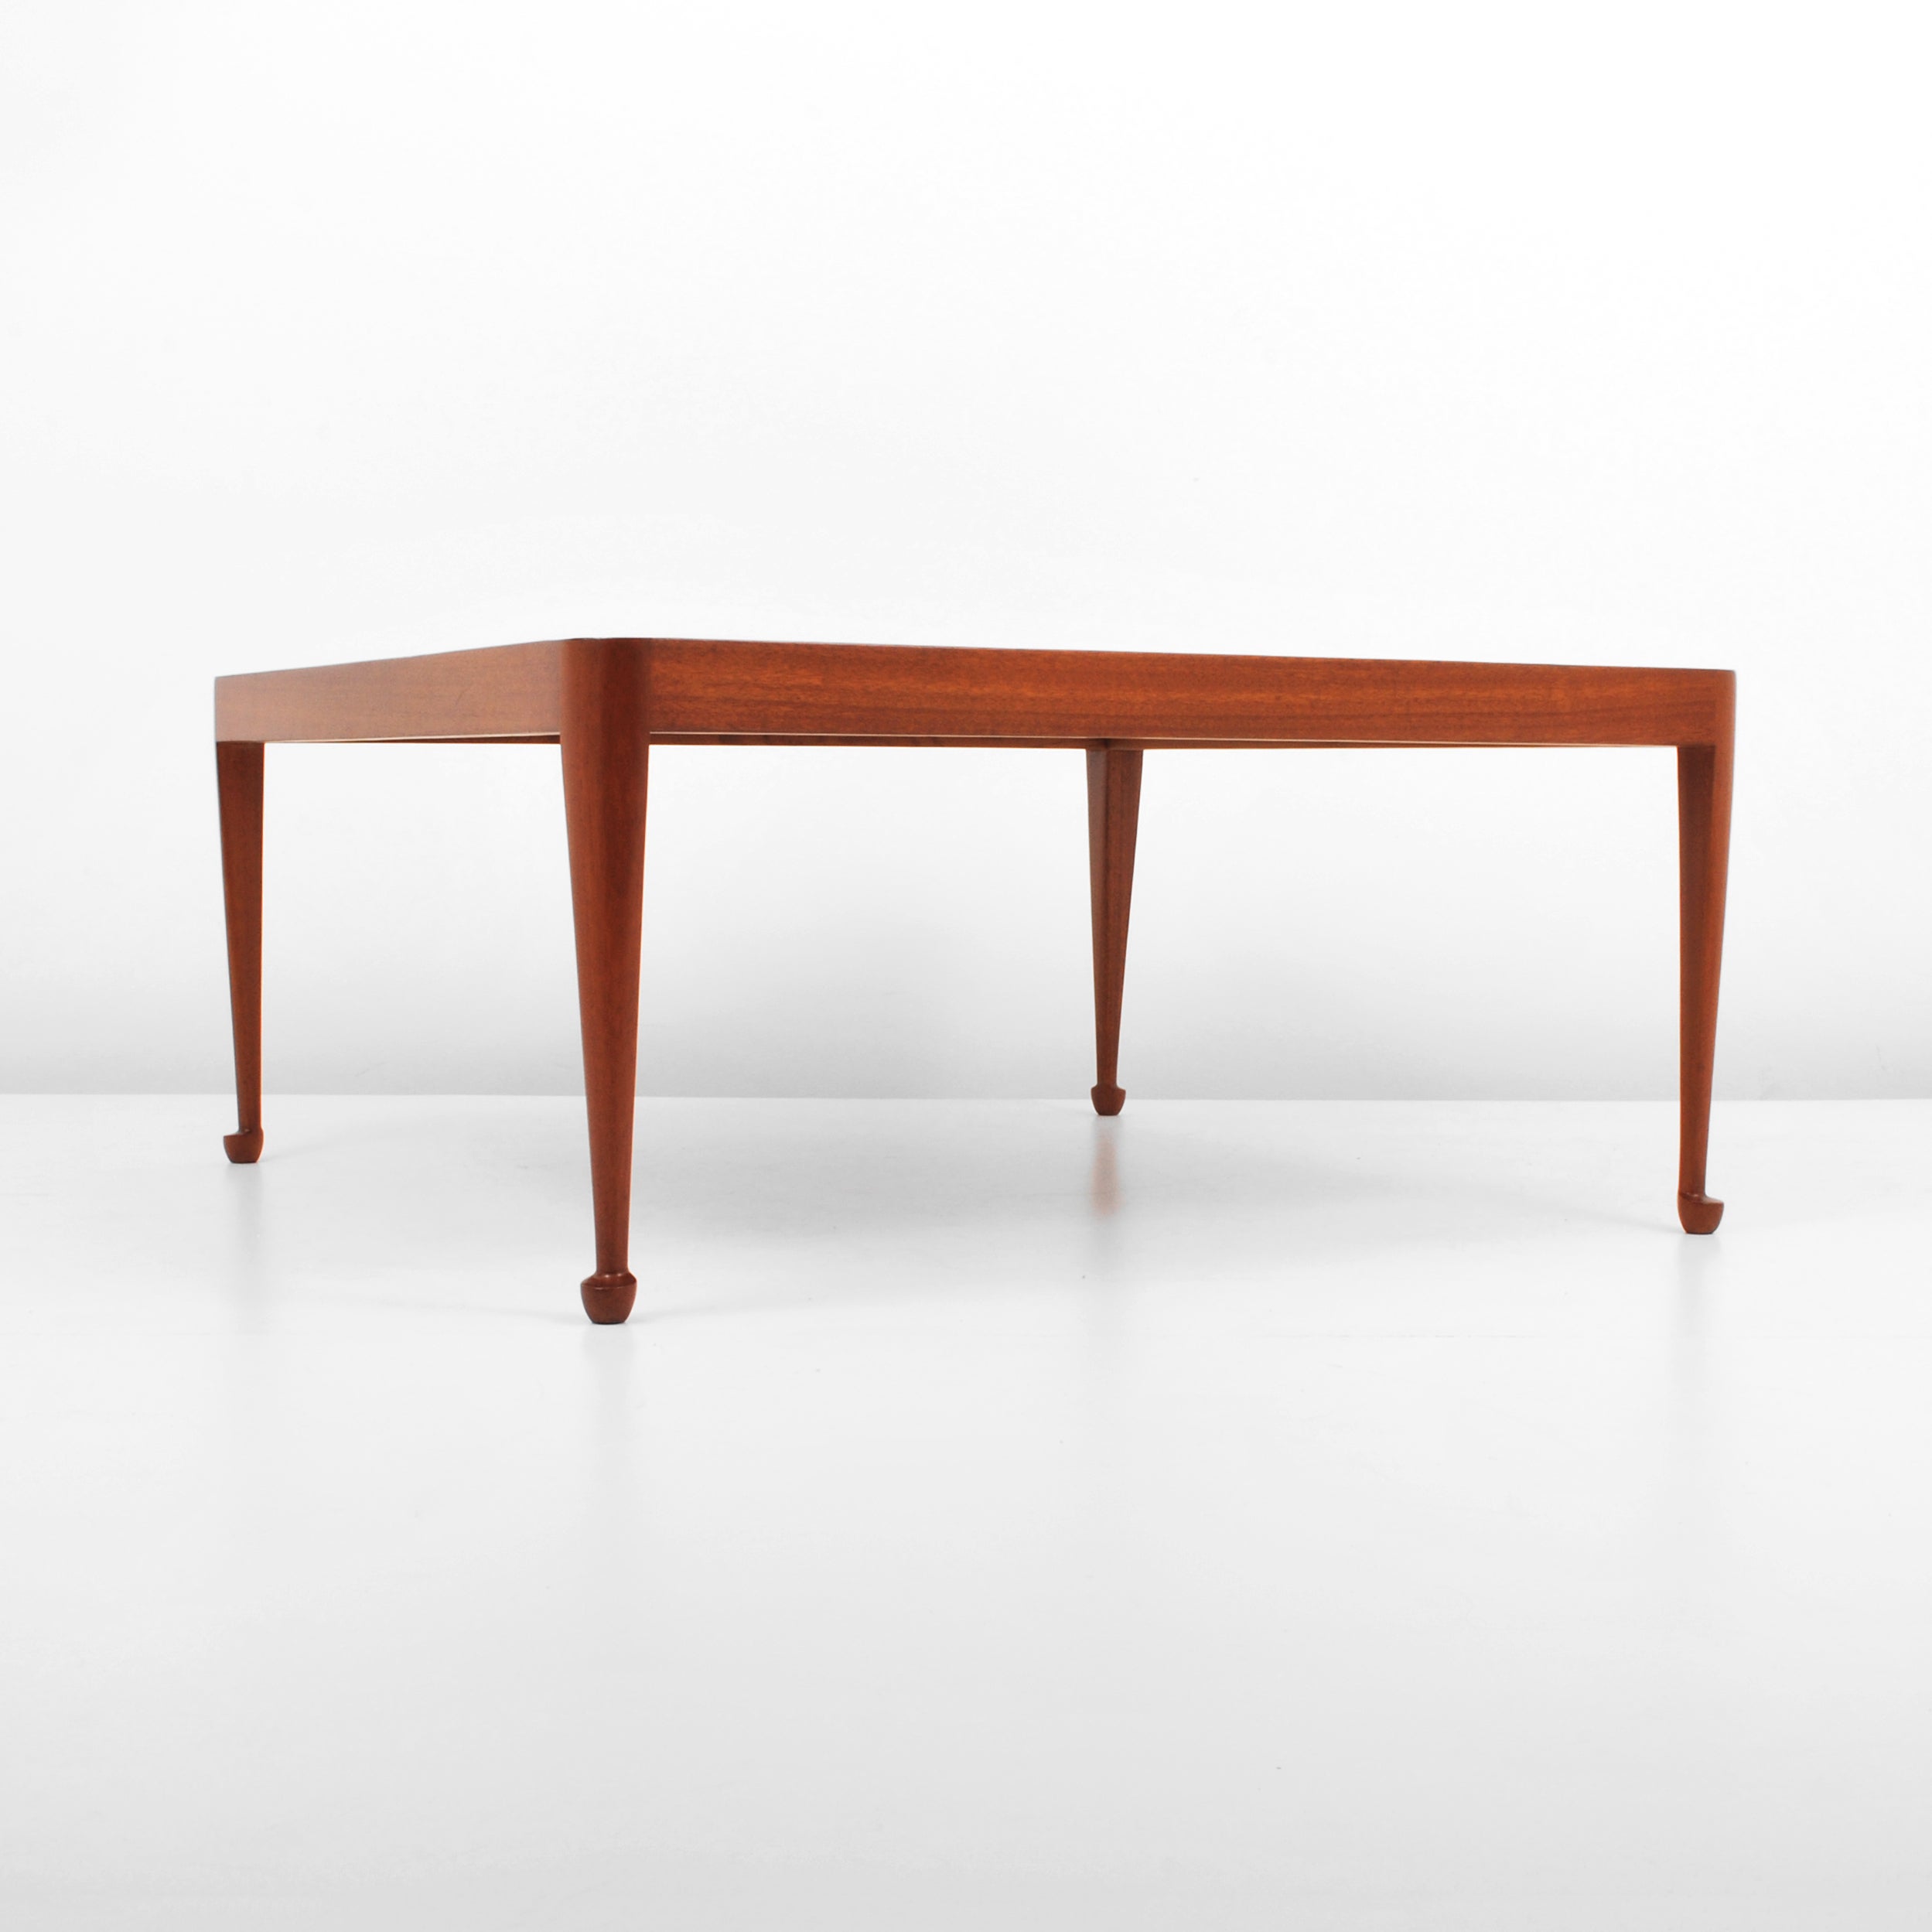 Josef Frank for Svenskt Tenn "Diplomat" Table, Danish-Scandinavian Modern